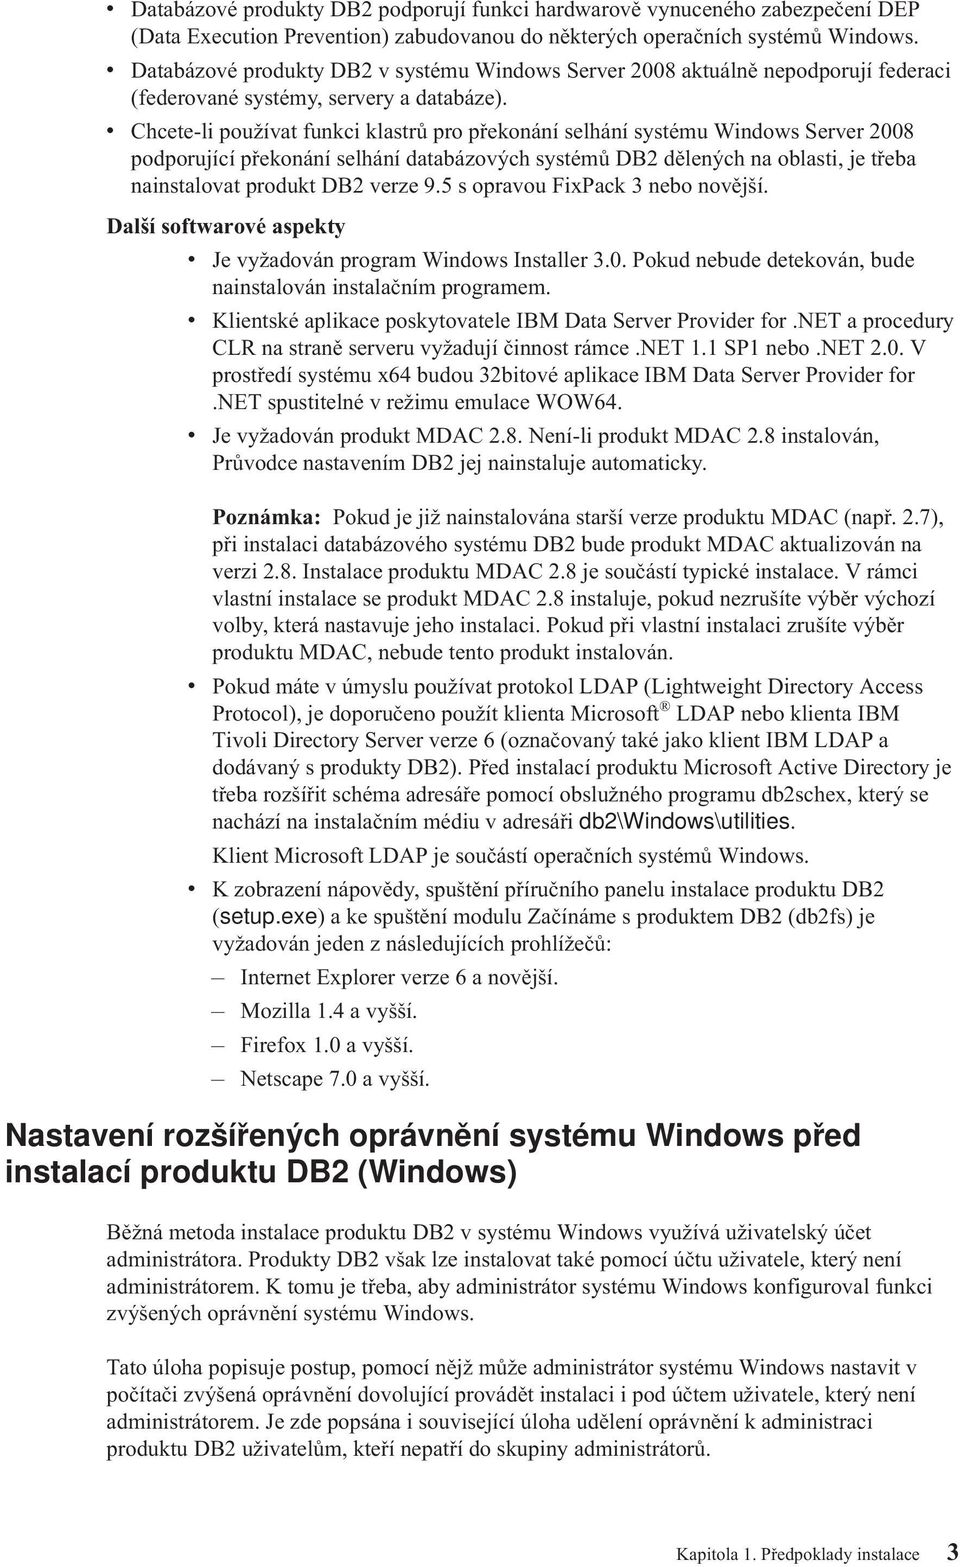 Chcete-li použíat funkci klastrů pro překonání selhání systému Windows Serer 2008 podporující překonání selhání databázoých systémů DB2 dělených na oblasti, je třeba nainstaloat produkt DB2 erze 9.